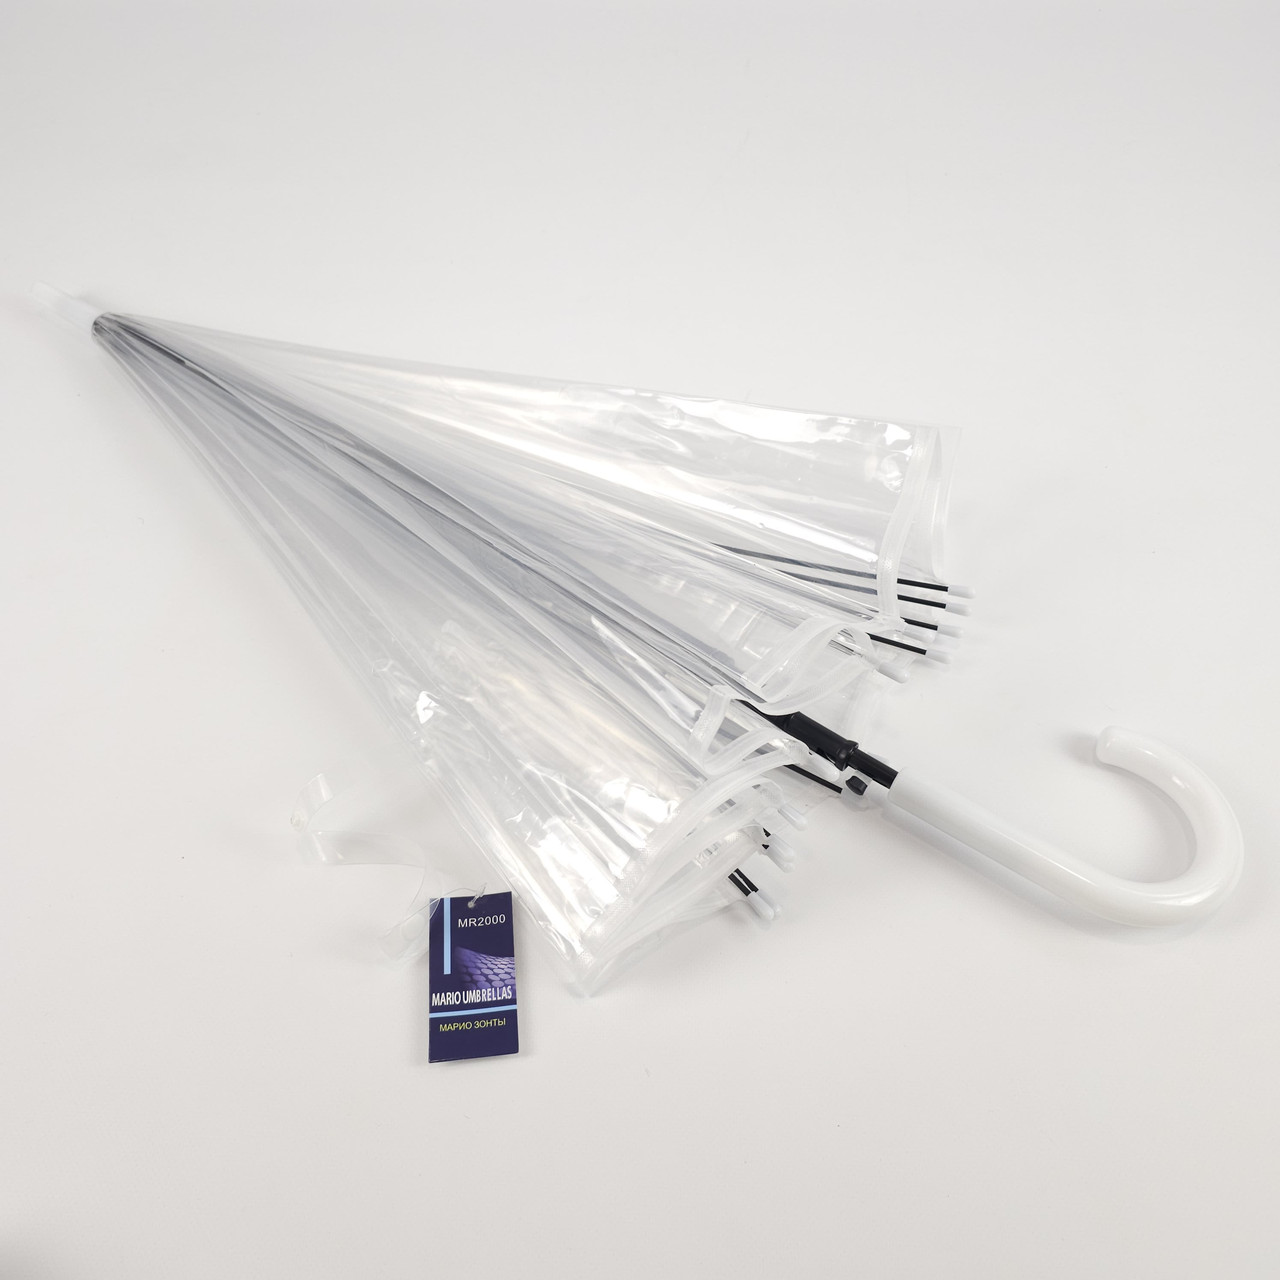 Прозора жіноча парасолька-тростина з 14 спицями та напівавтоматичним відкриттям, Біла ручка